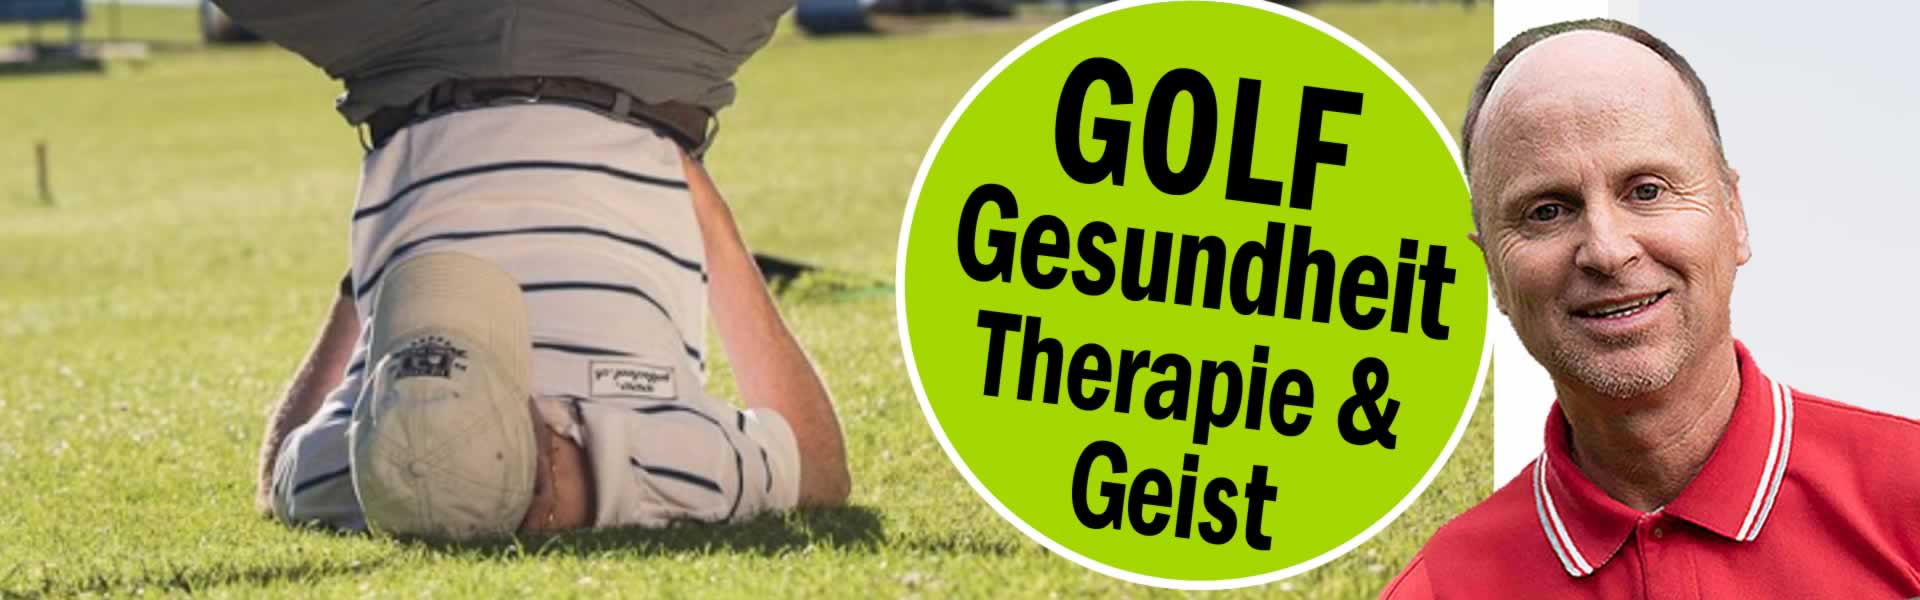 Golf-Gesundheit-Zuerich-Golf-Therapie-Geist-Seele-Golflehrer-Pro-01